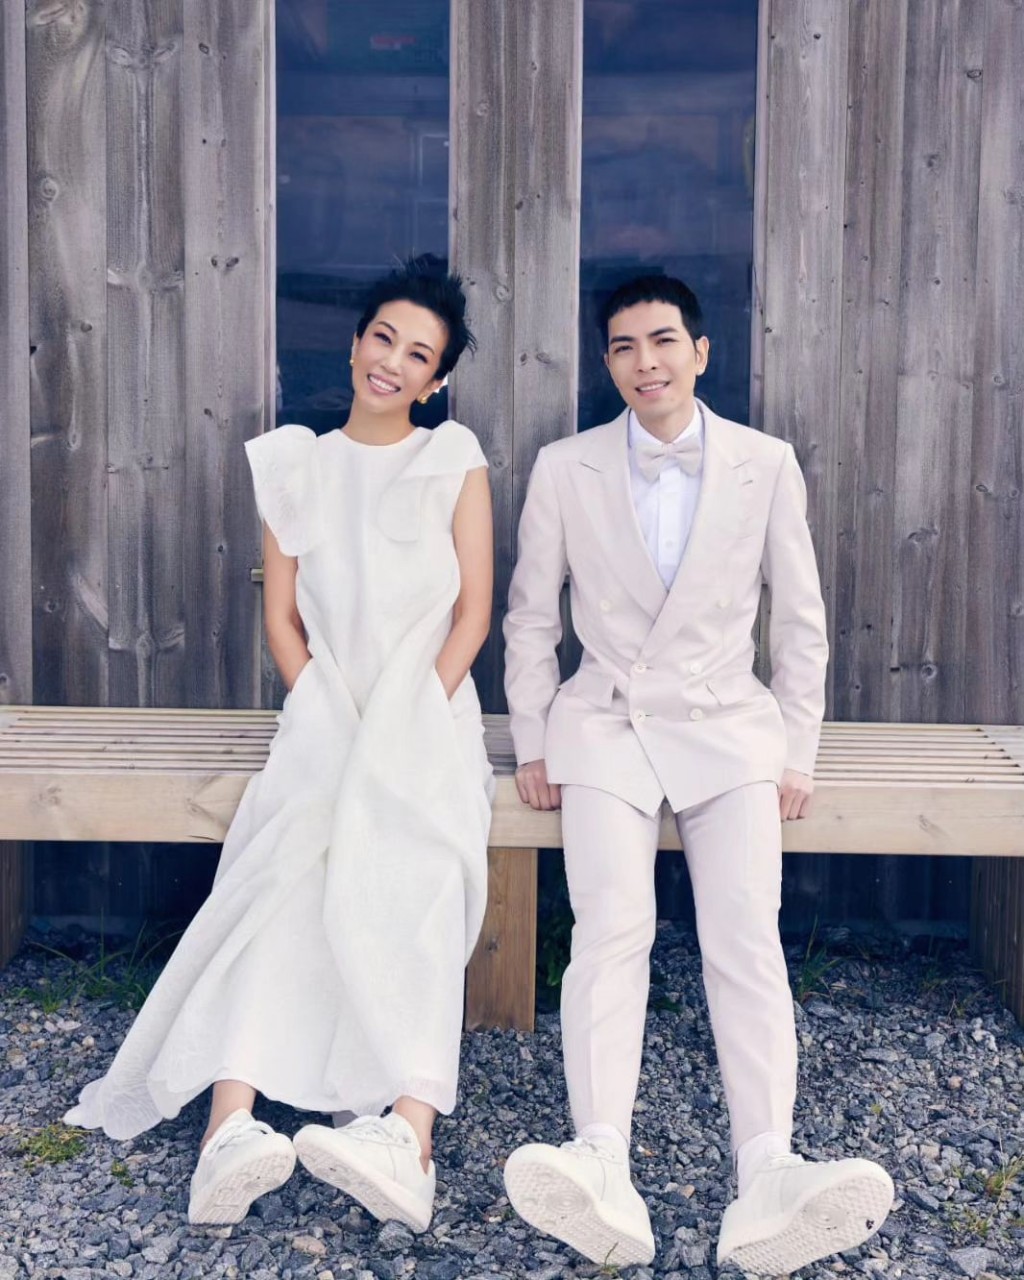 萧敬腾和林有慧分别在社交平台报喜，宣布10月19日定为结婚日。